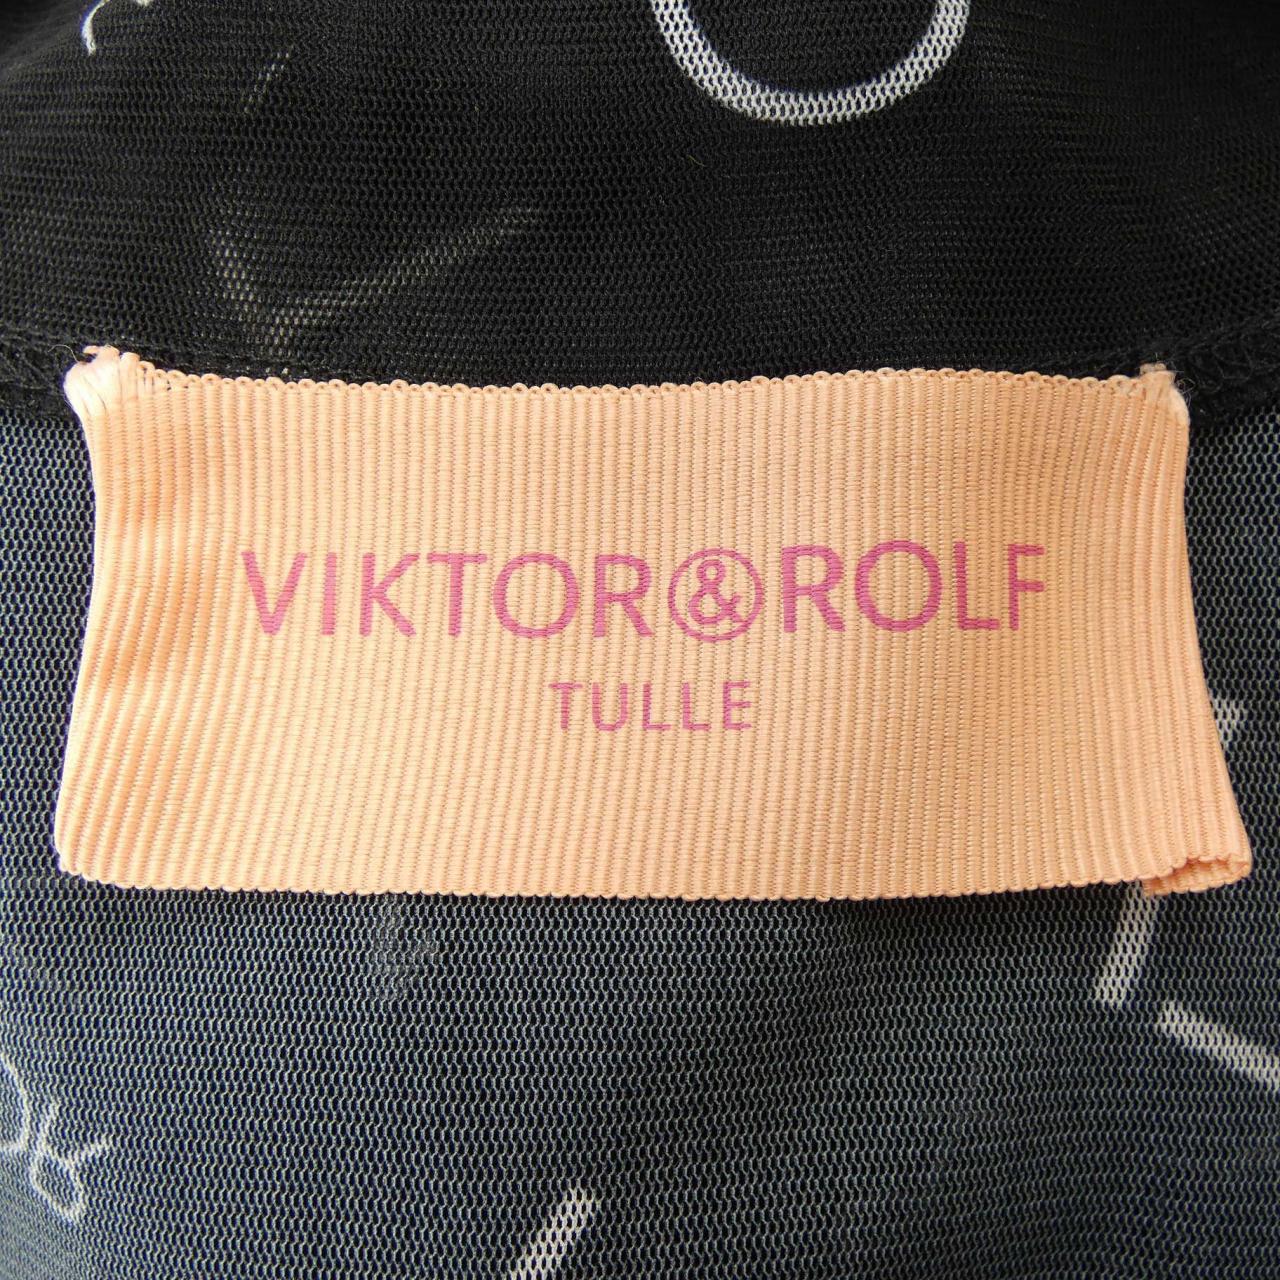 ヴィクターアンドロルフ VIKTOR & ROLF トップス